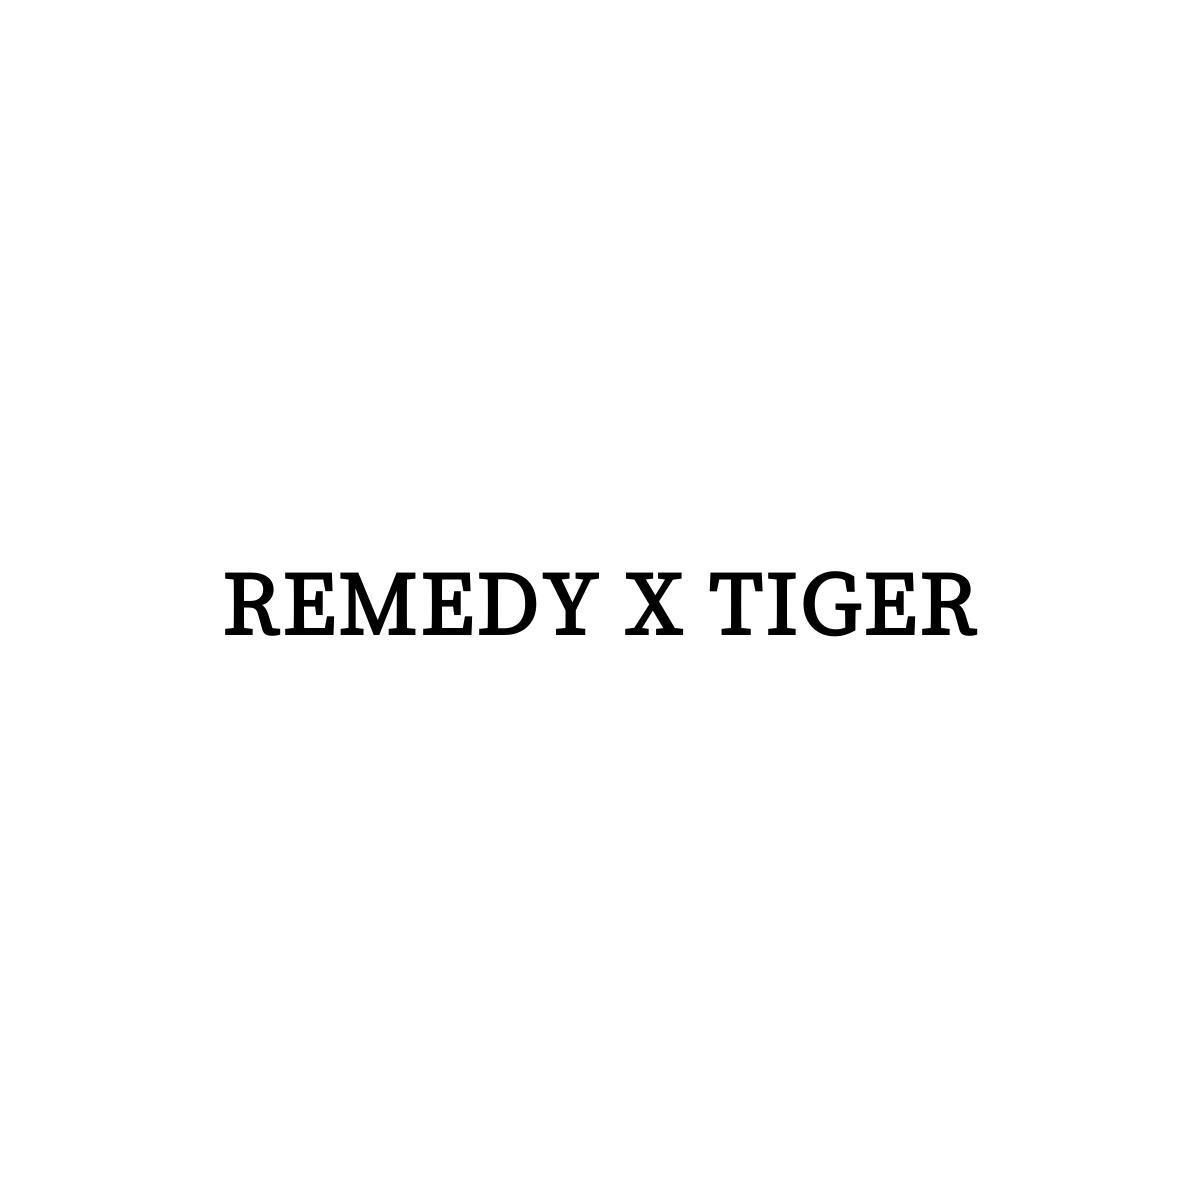 REMEDY X TIGER